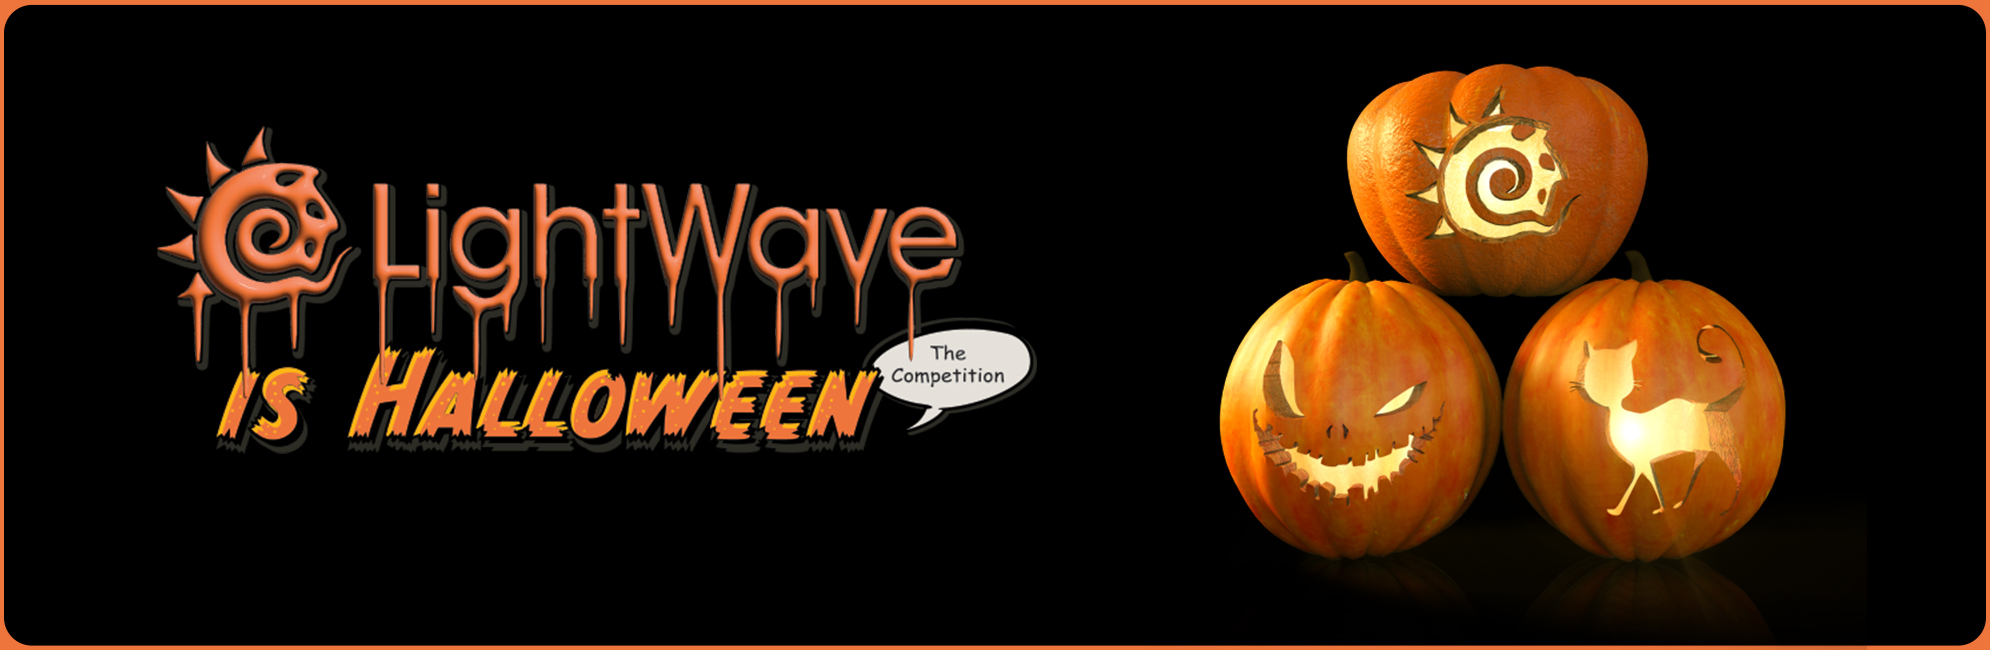 Nome: LightWave is Halloween  LightWave 3D Promo 20320918.jpg
Visite: 97
Dimensione: 387.4 KB